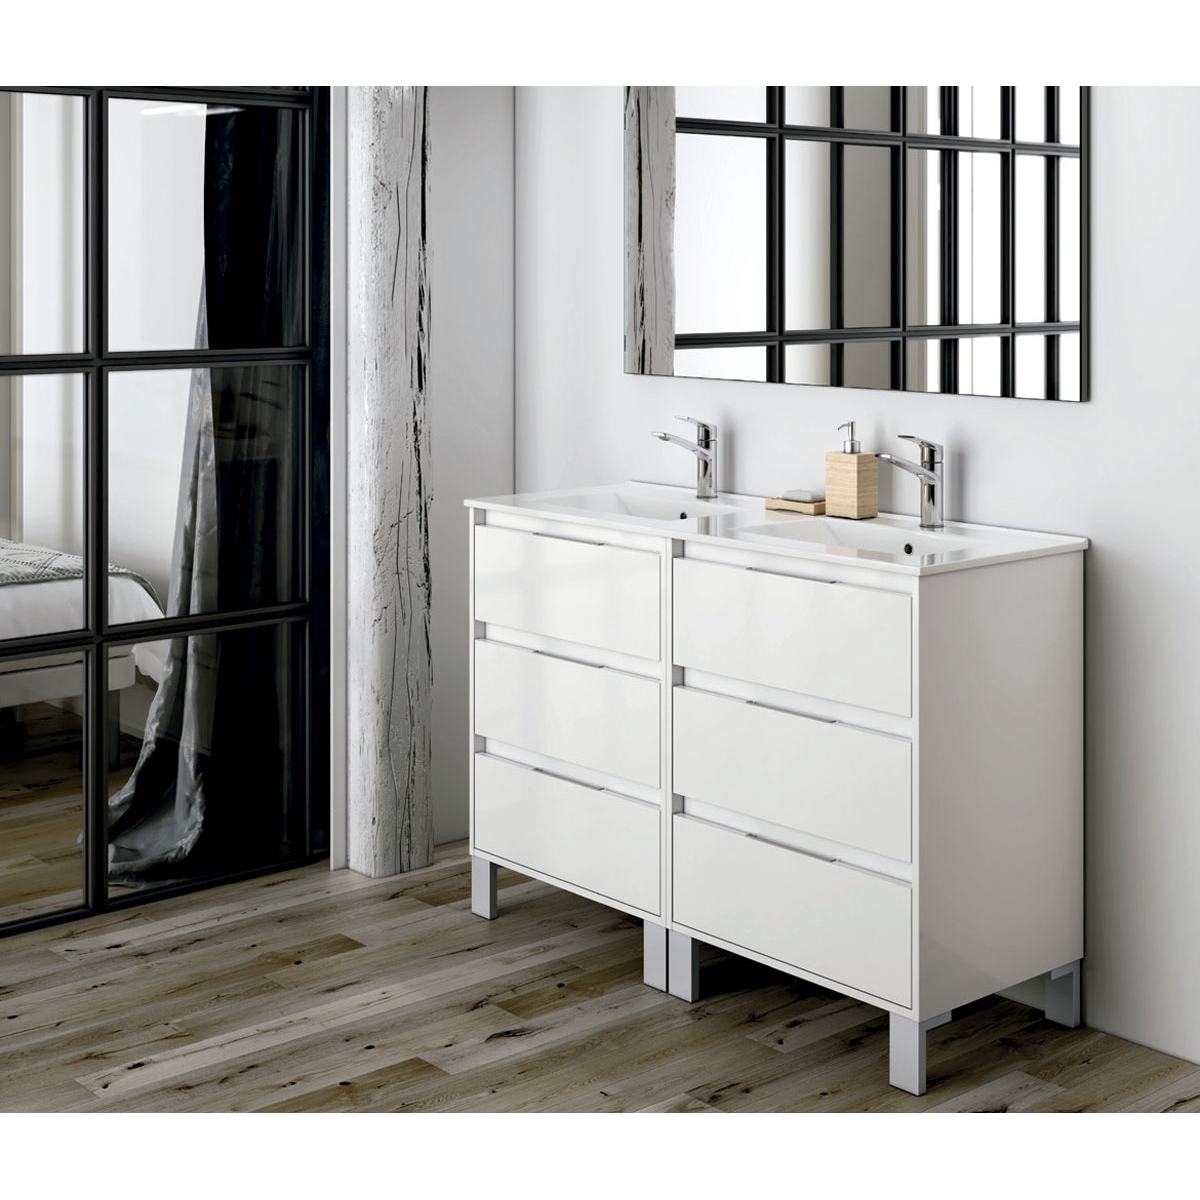 Mueble de baño Bolton de 80 cm de ancho color blanco con lavabo integrado